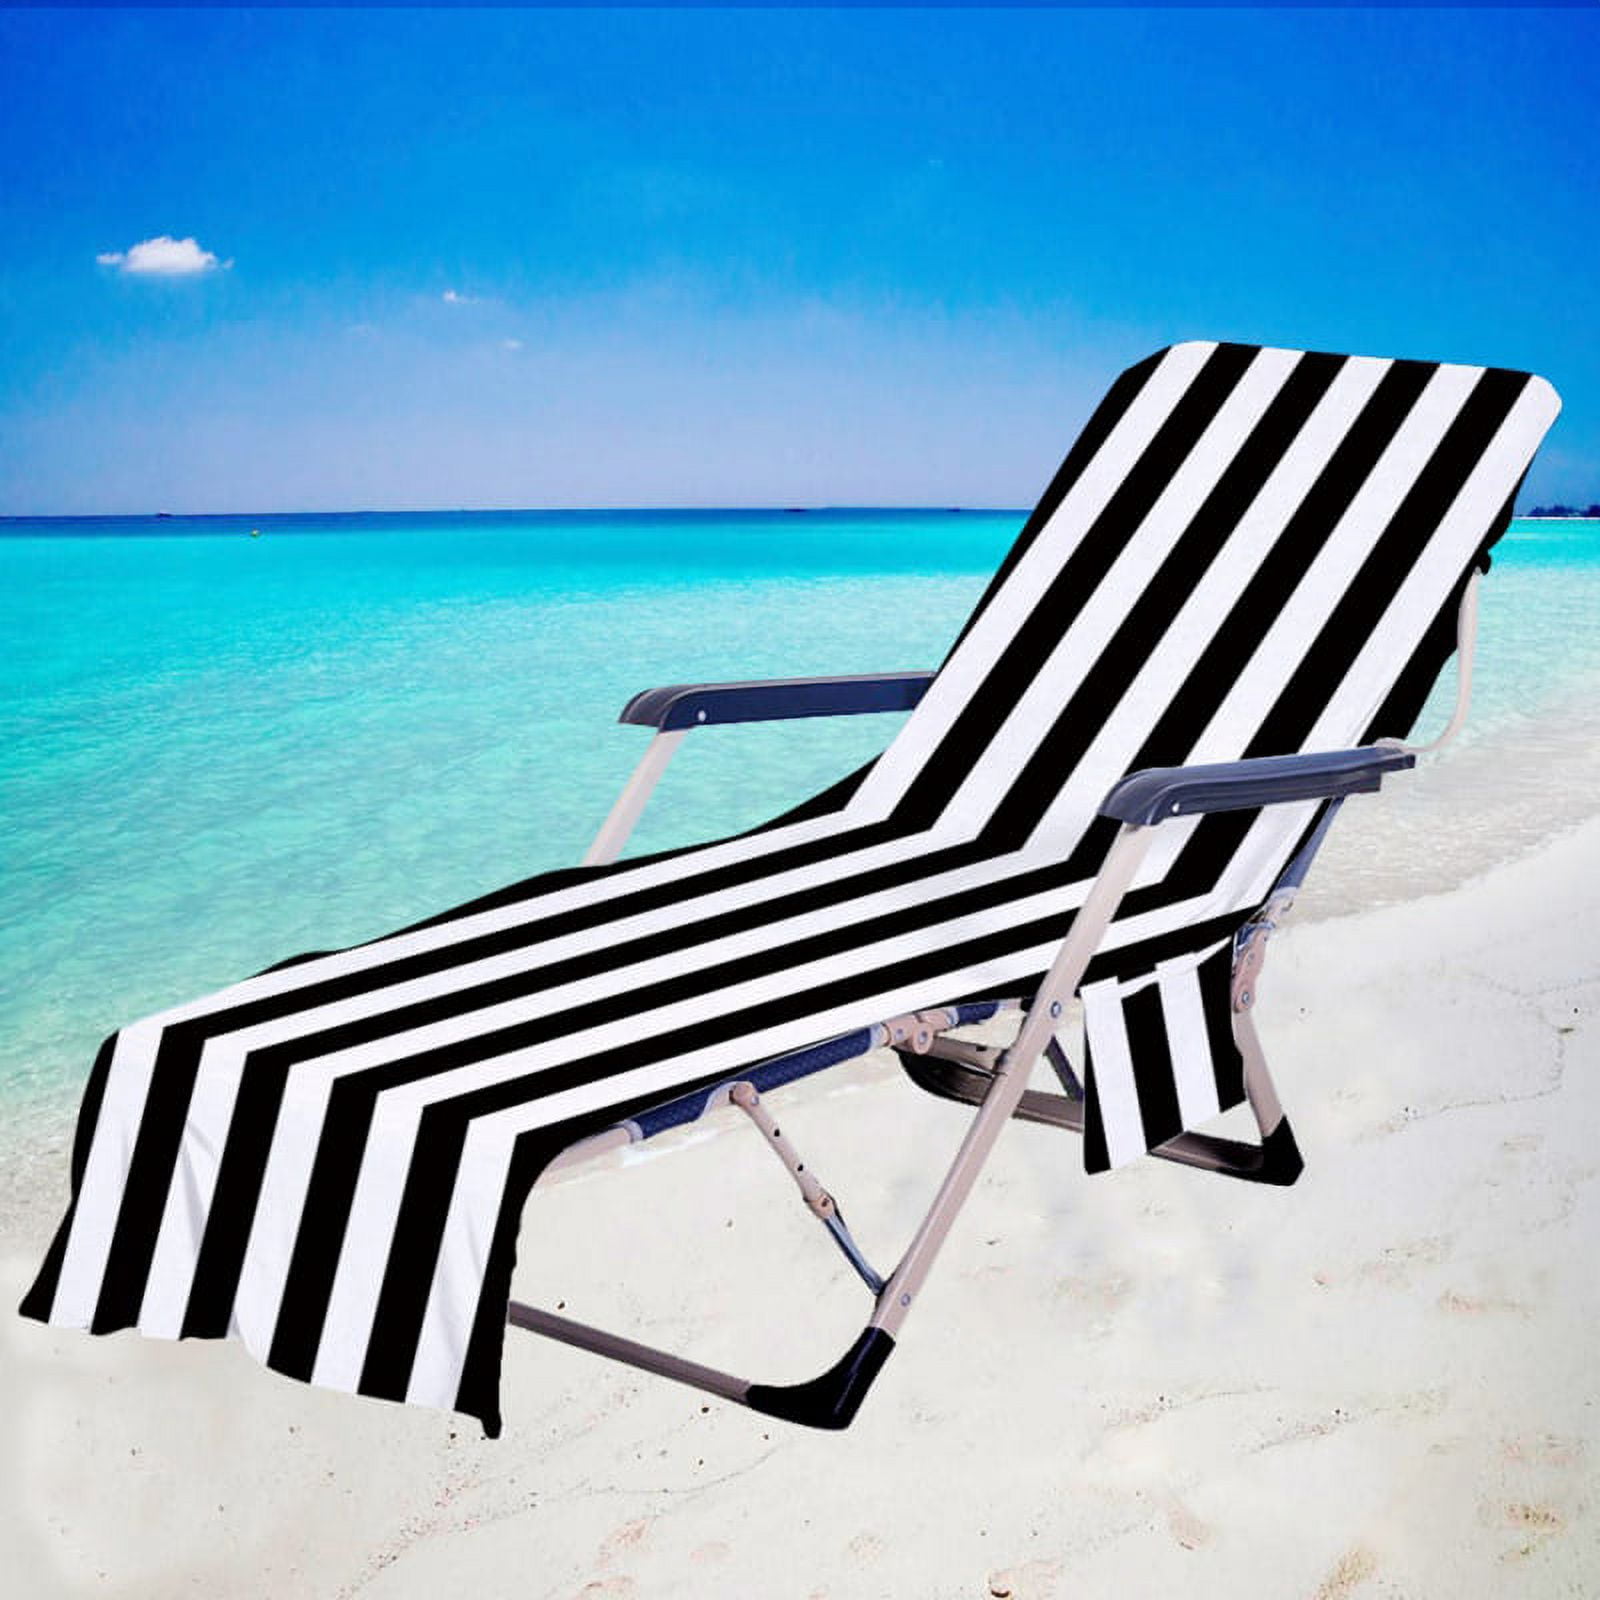 Striped Beach Chair Towel, Lounge Chair Beach Towel Cover Chaise Lounge Chair Cover Towel with Pockets No Sliding Beach Towel for Sun Lounger Hotel